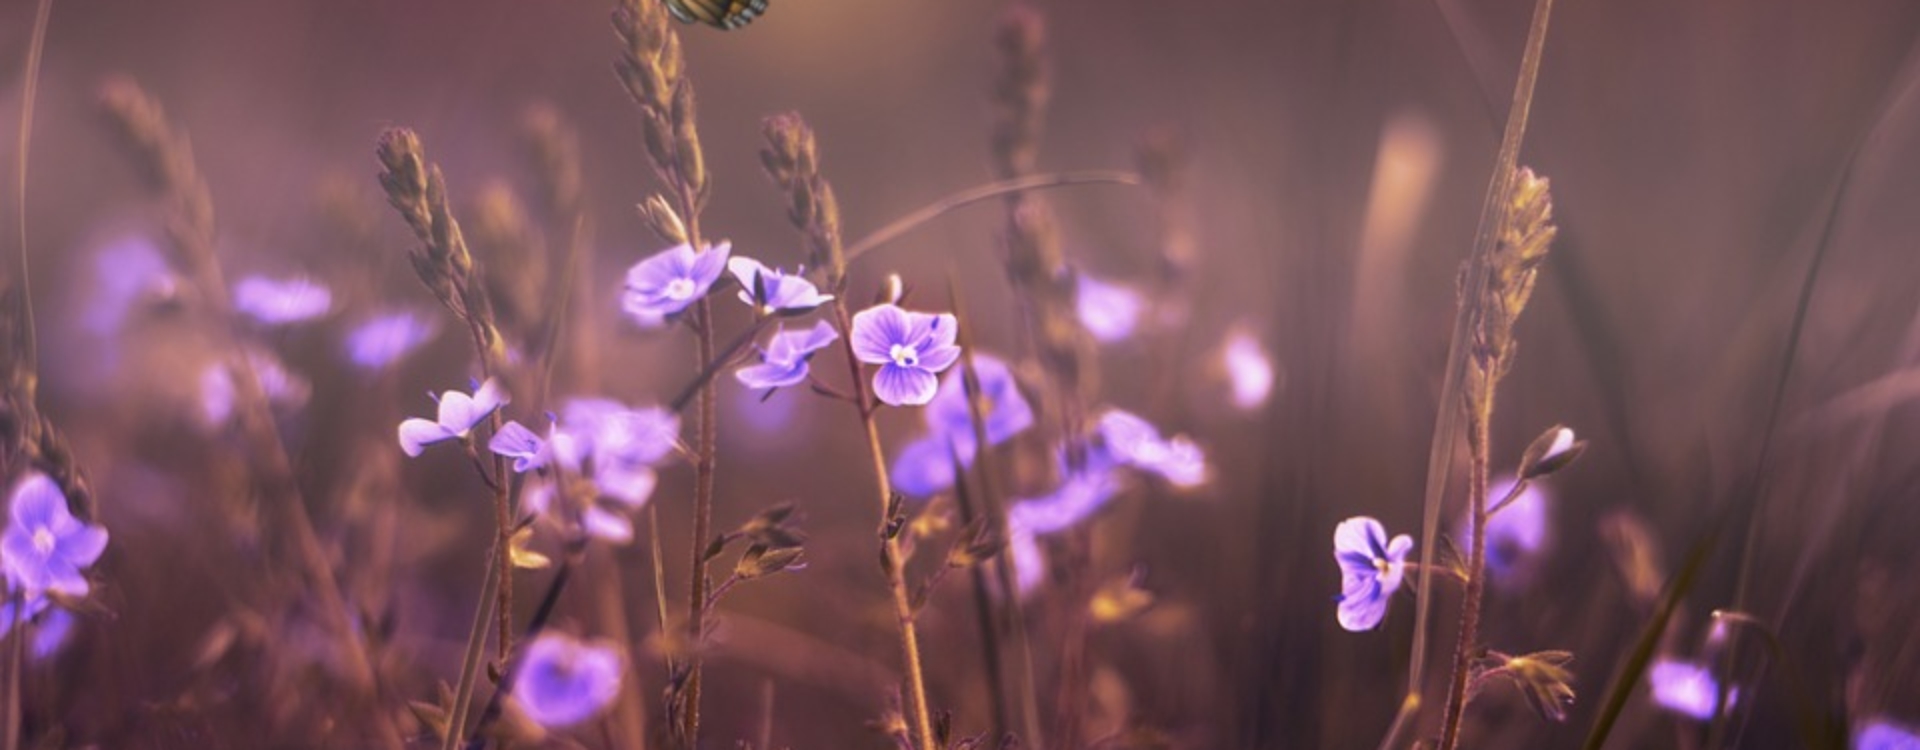 papillon_fleurs_violettes